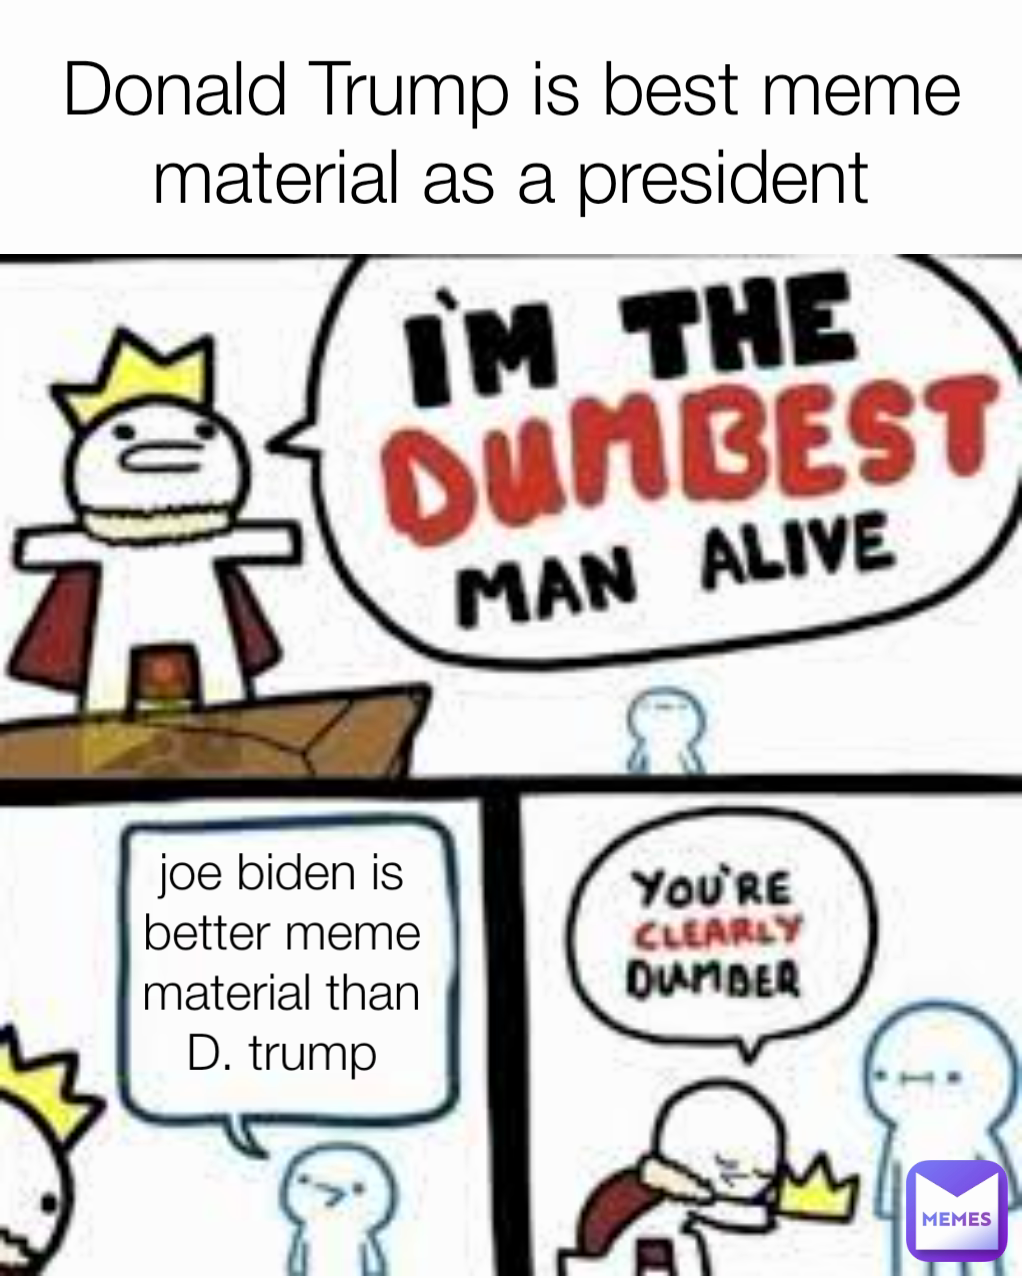 joe biden is better meme material than D. trump Donald Trump is best meme material as a president